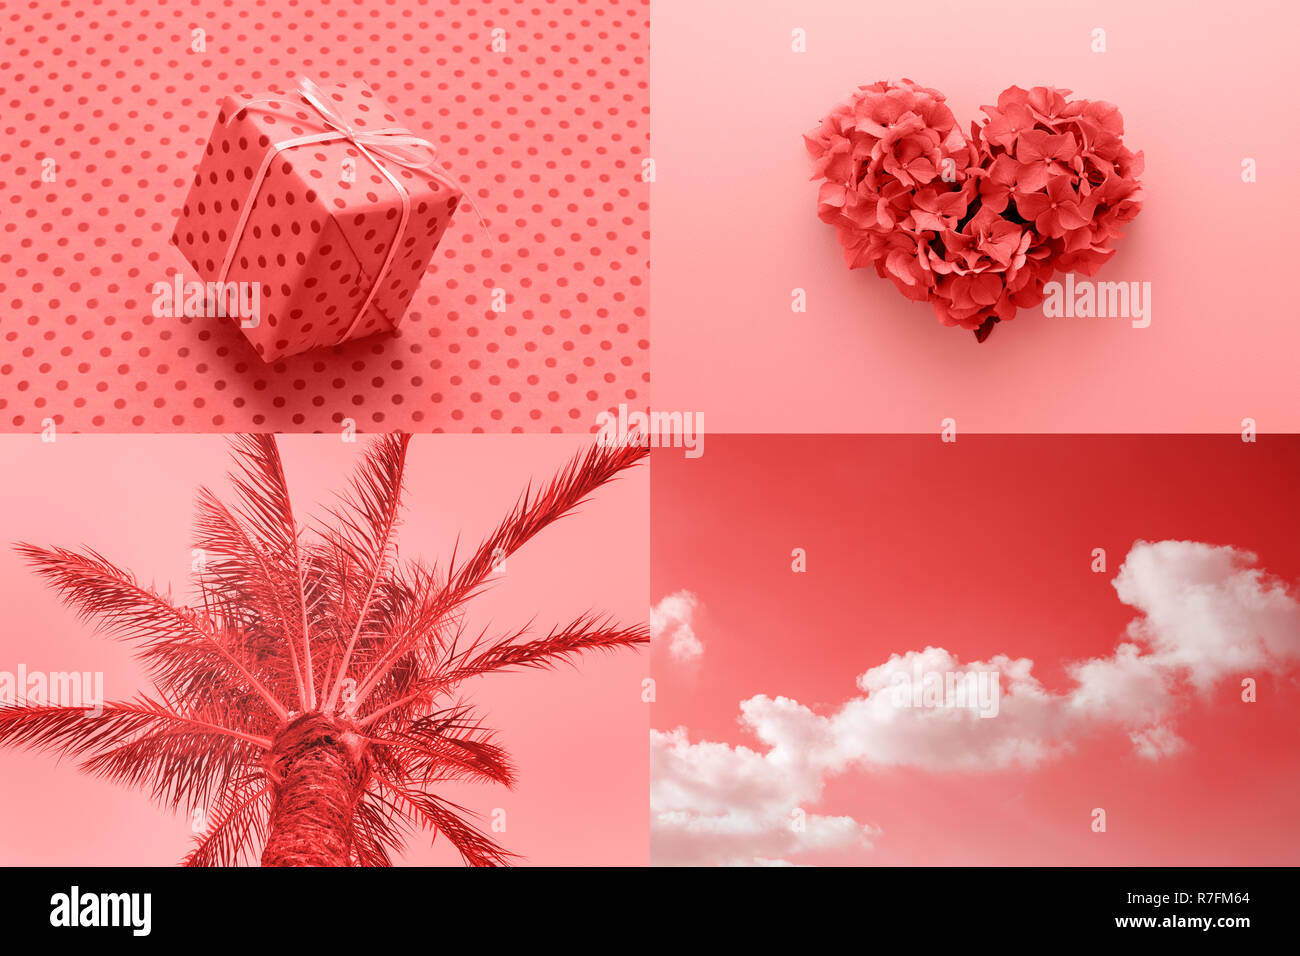 Romantische kreative Collage von lebende Koralle Farbe für das Jahr 2019 angespornt. Valentinstag, Mode minimal. Stockfoto